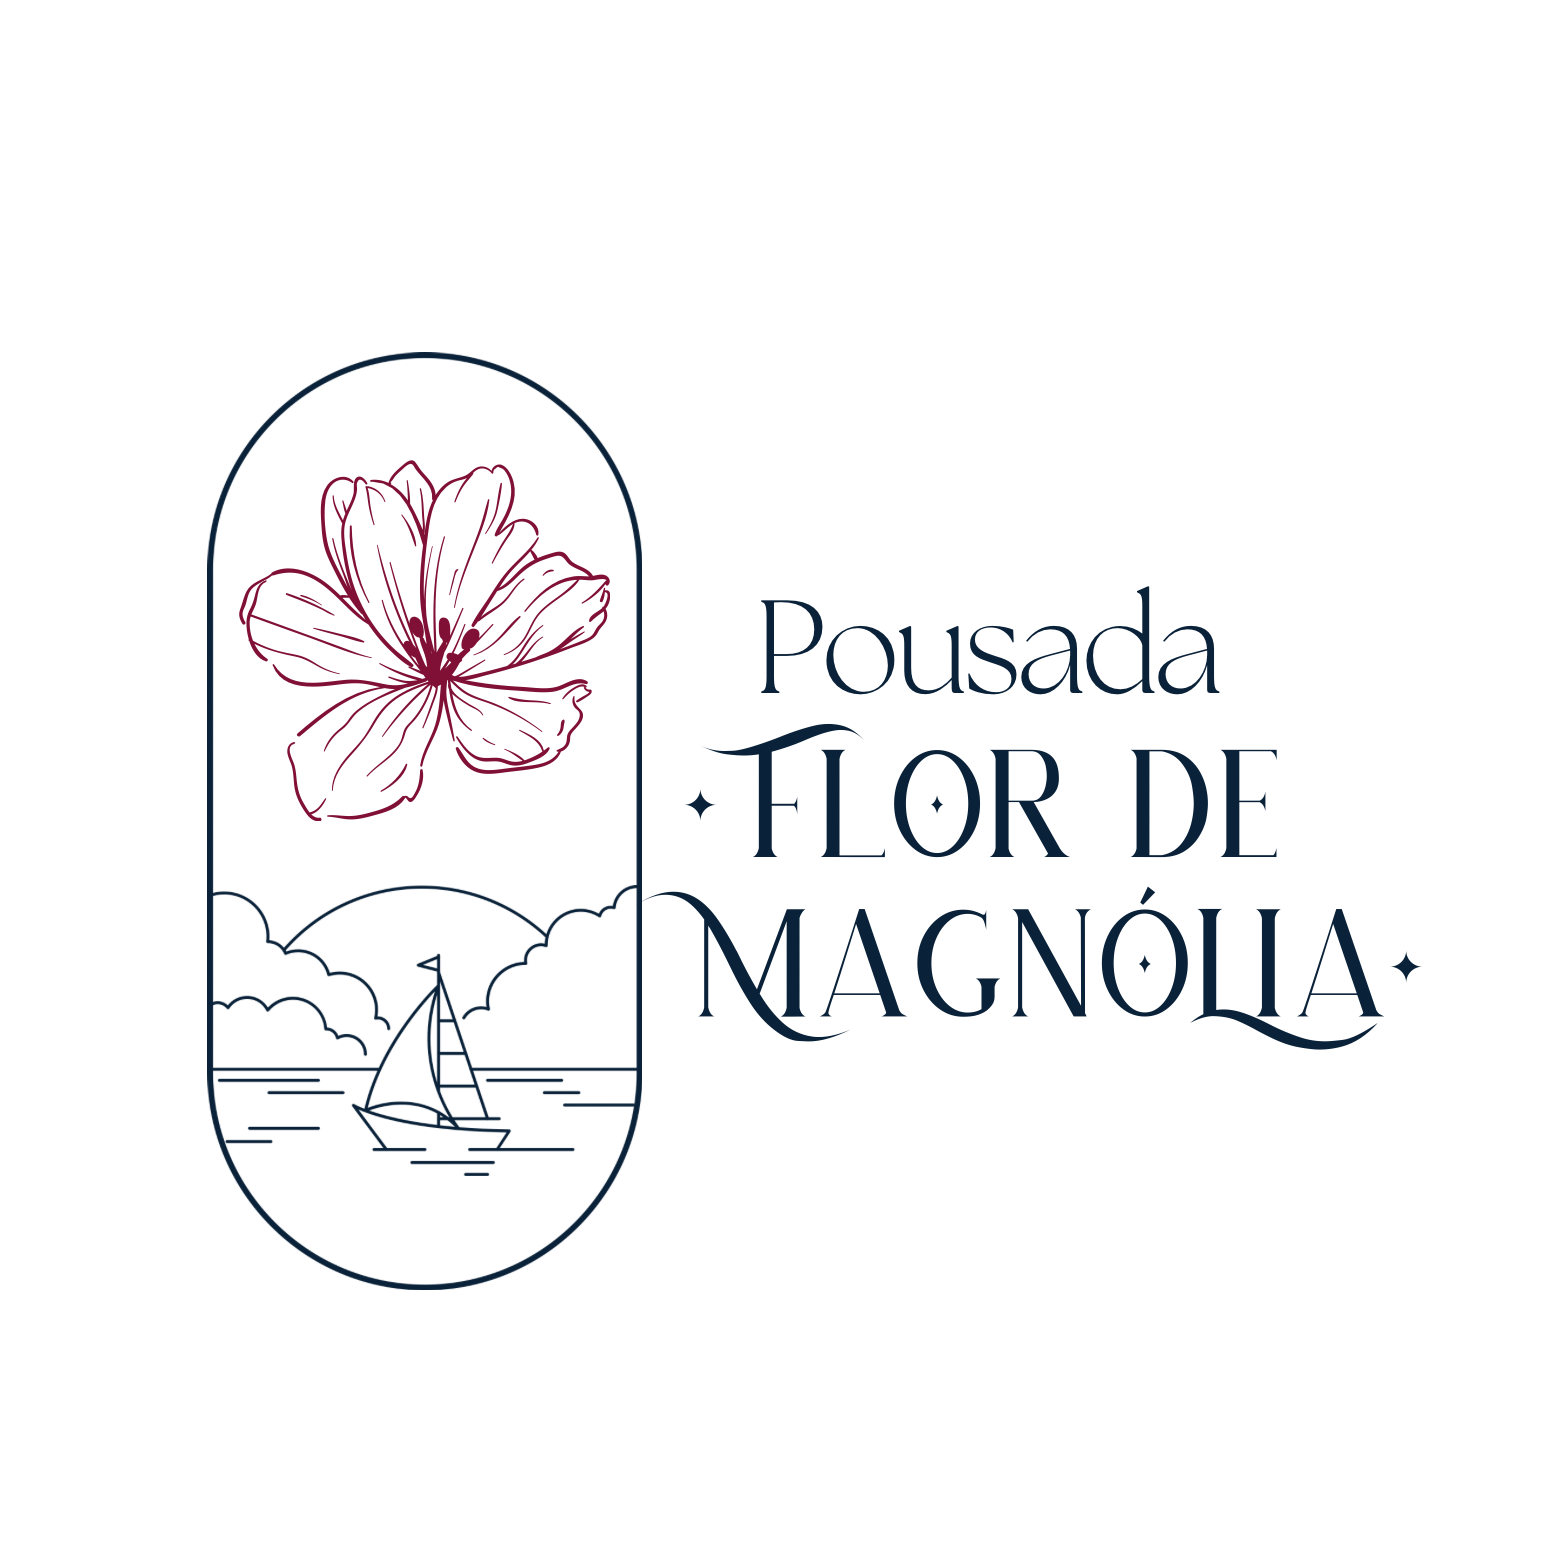 Pousada Flor de Magnólia logo 